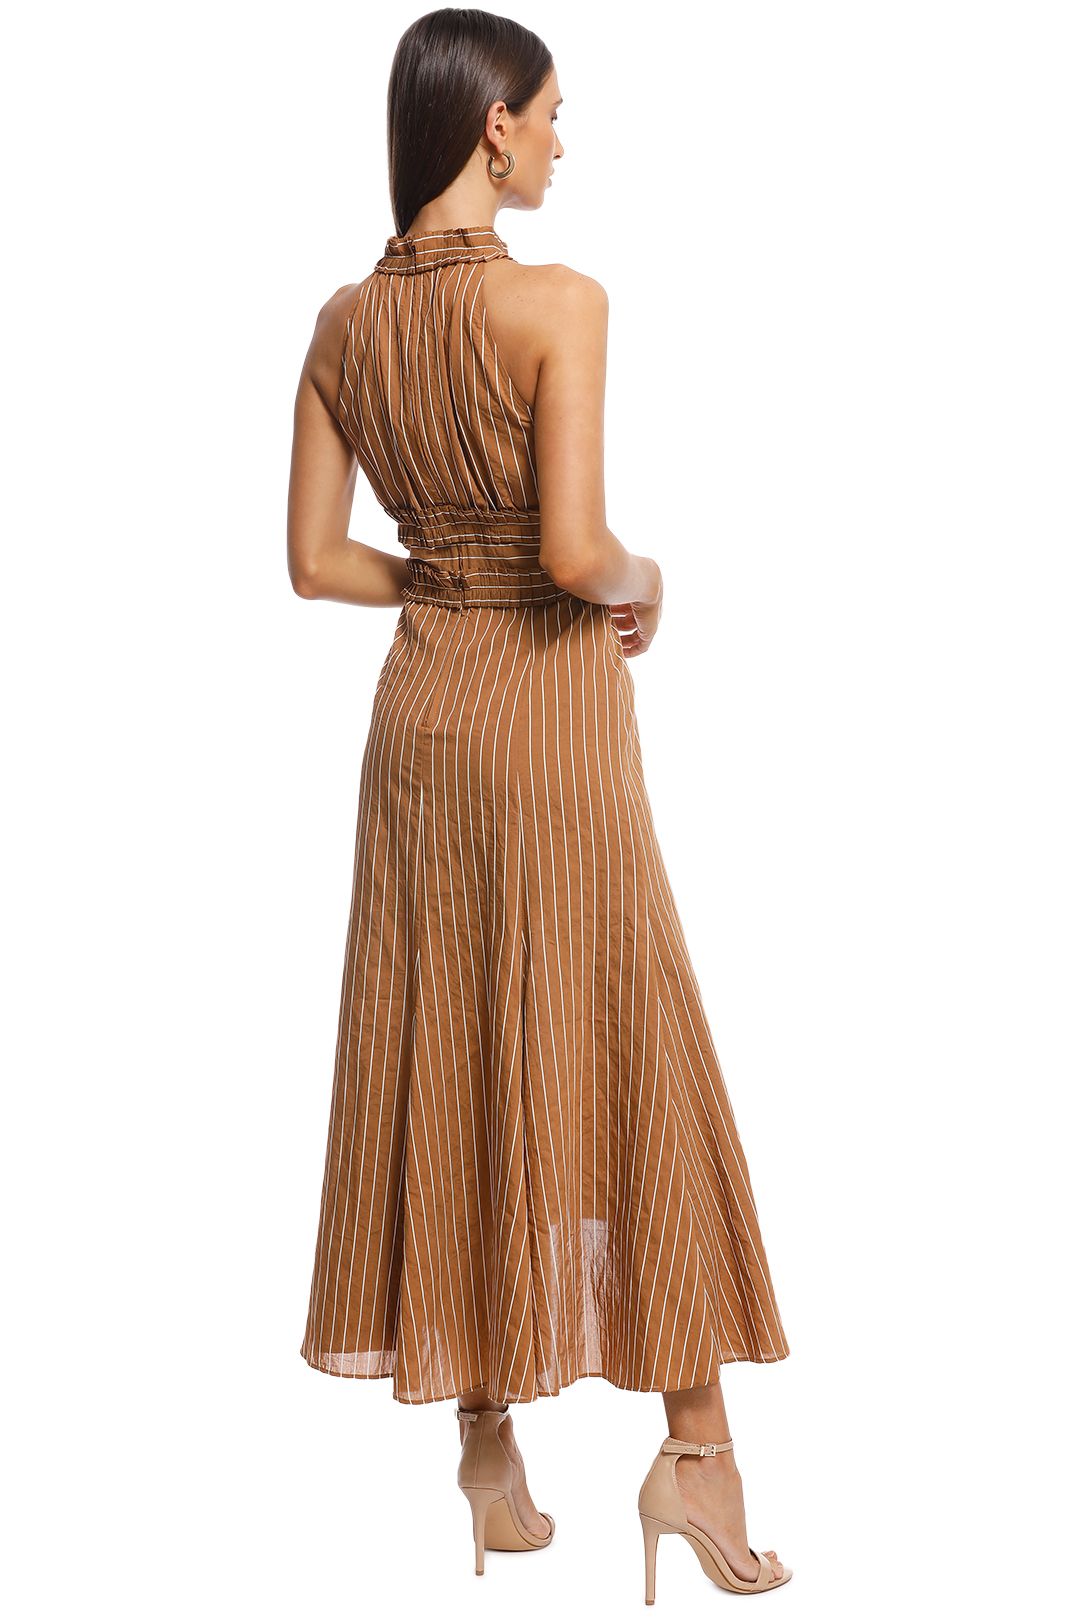 CMEO Collective - Suffuse Midi Dress - Tan Stripe - Back